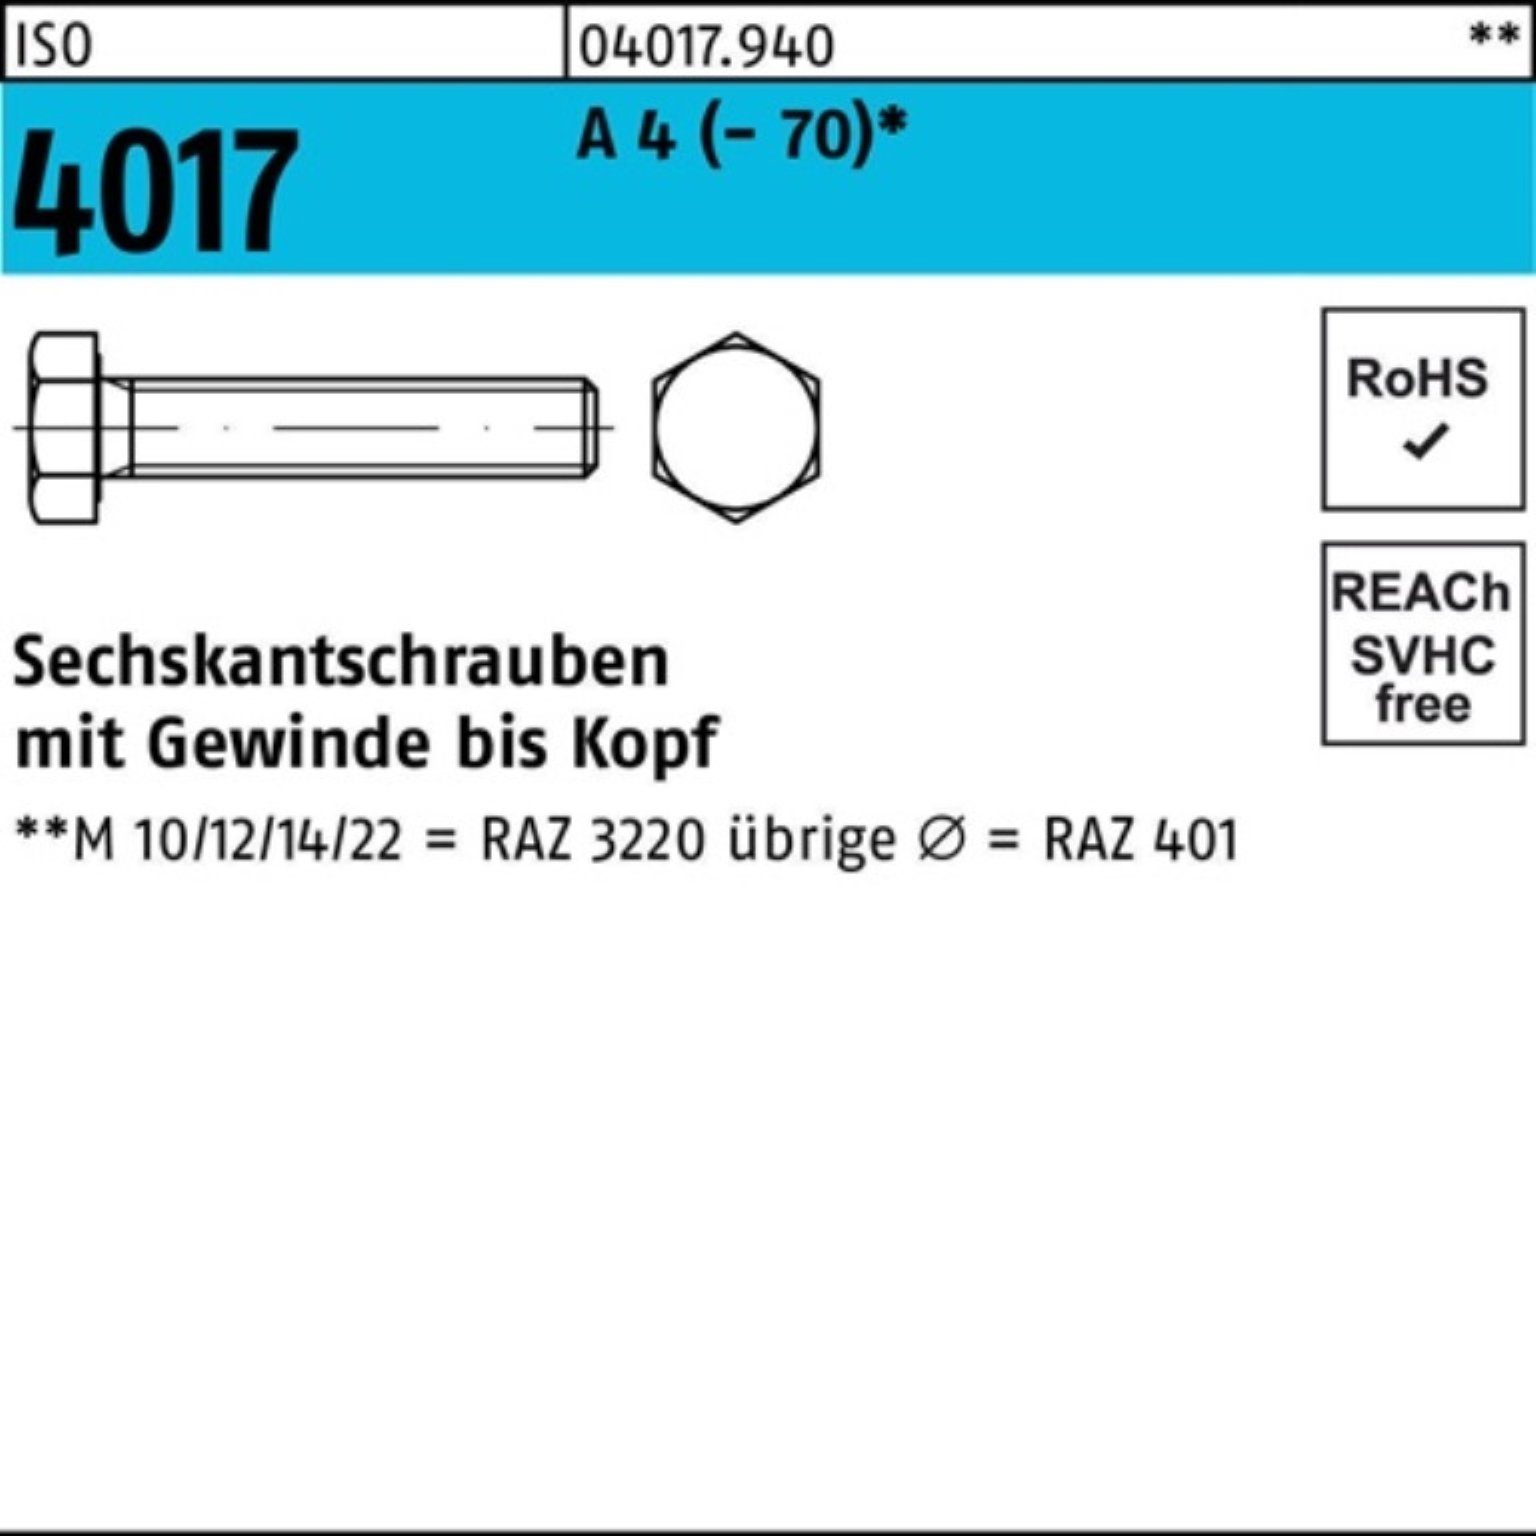 M30x Sechskantschraube 40 4017 4 A 1 4017 Stück VG ISO Bufab Sechskantschraube Pack ISO 100er